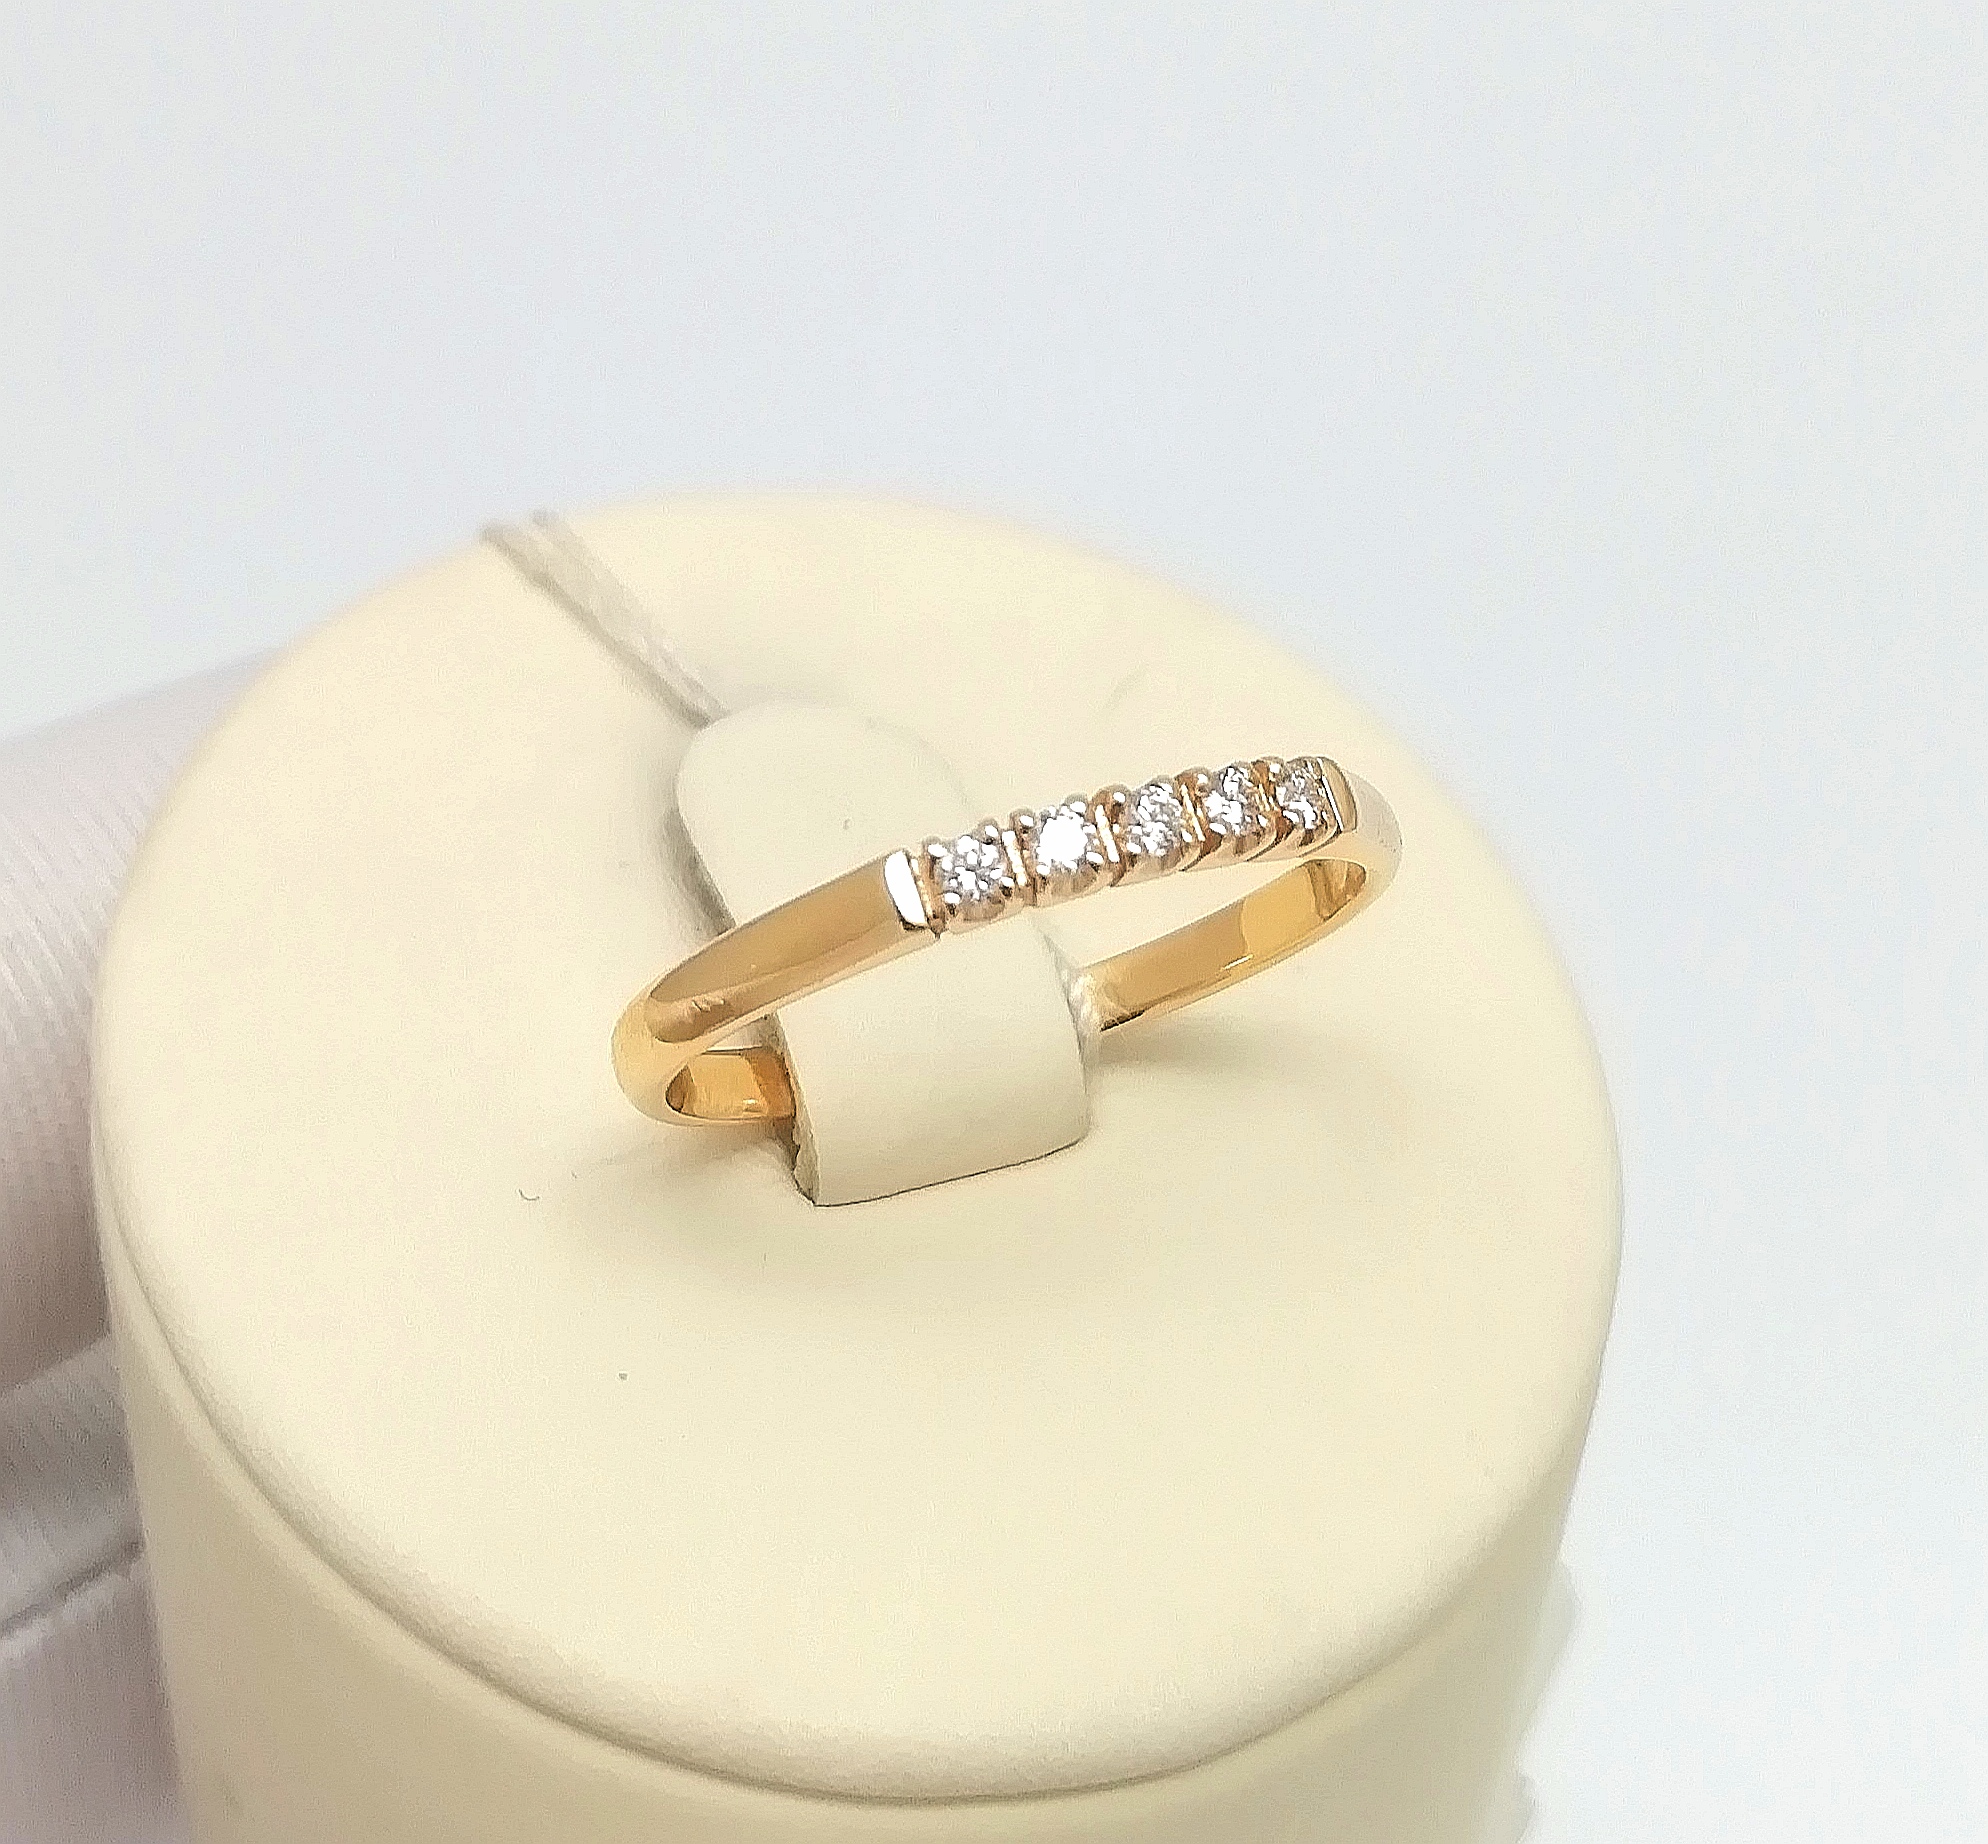 Классическое женское золотое кольцо с бриллиантами вз002136-7 1,51гр, вставка бриллиант